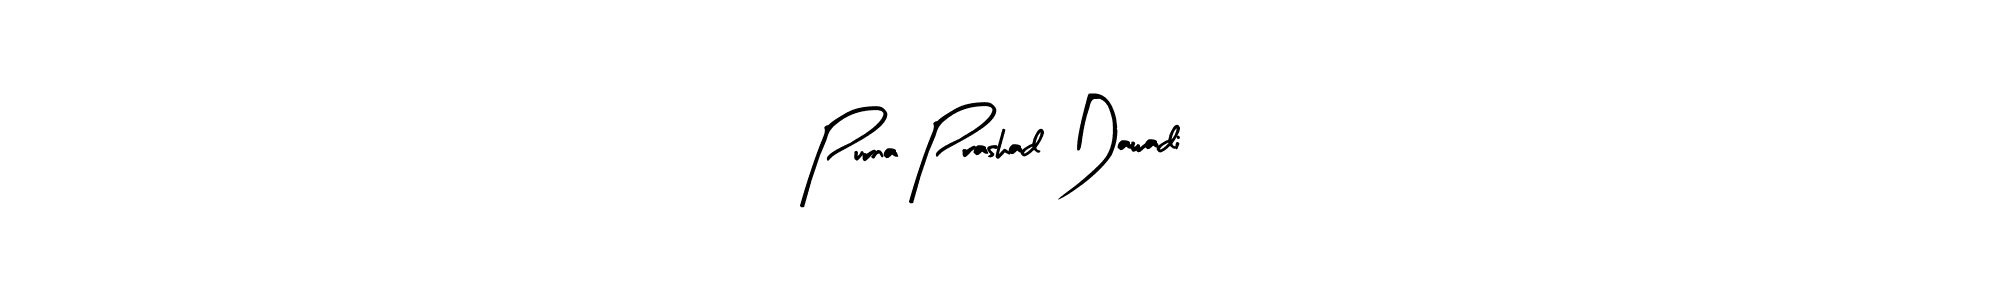 How to Draw Purna Prashad Dawadi signature style? Arty Signature is a latest design signature styles for name Purna Prashad Dawadi. Purna Prashad Dawadi signature style 8 images and pictures png